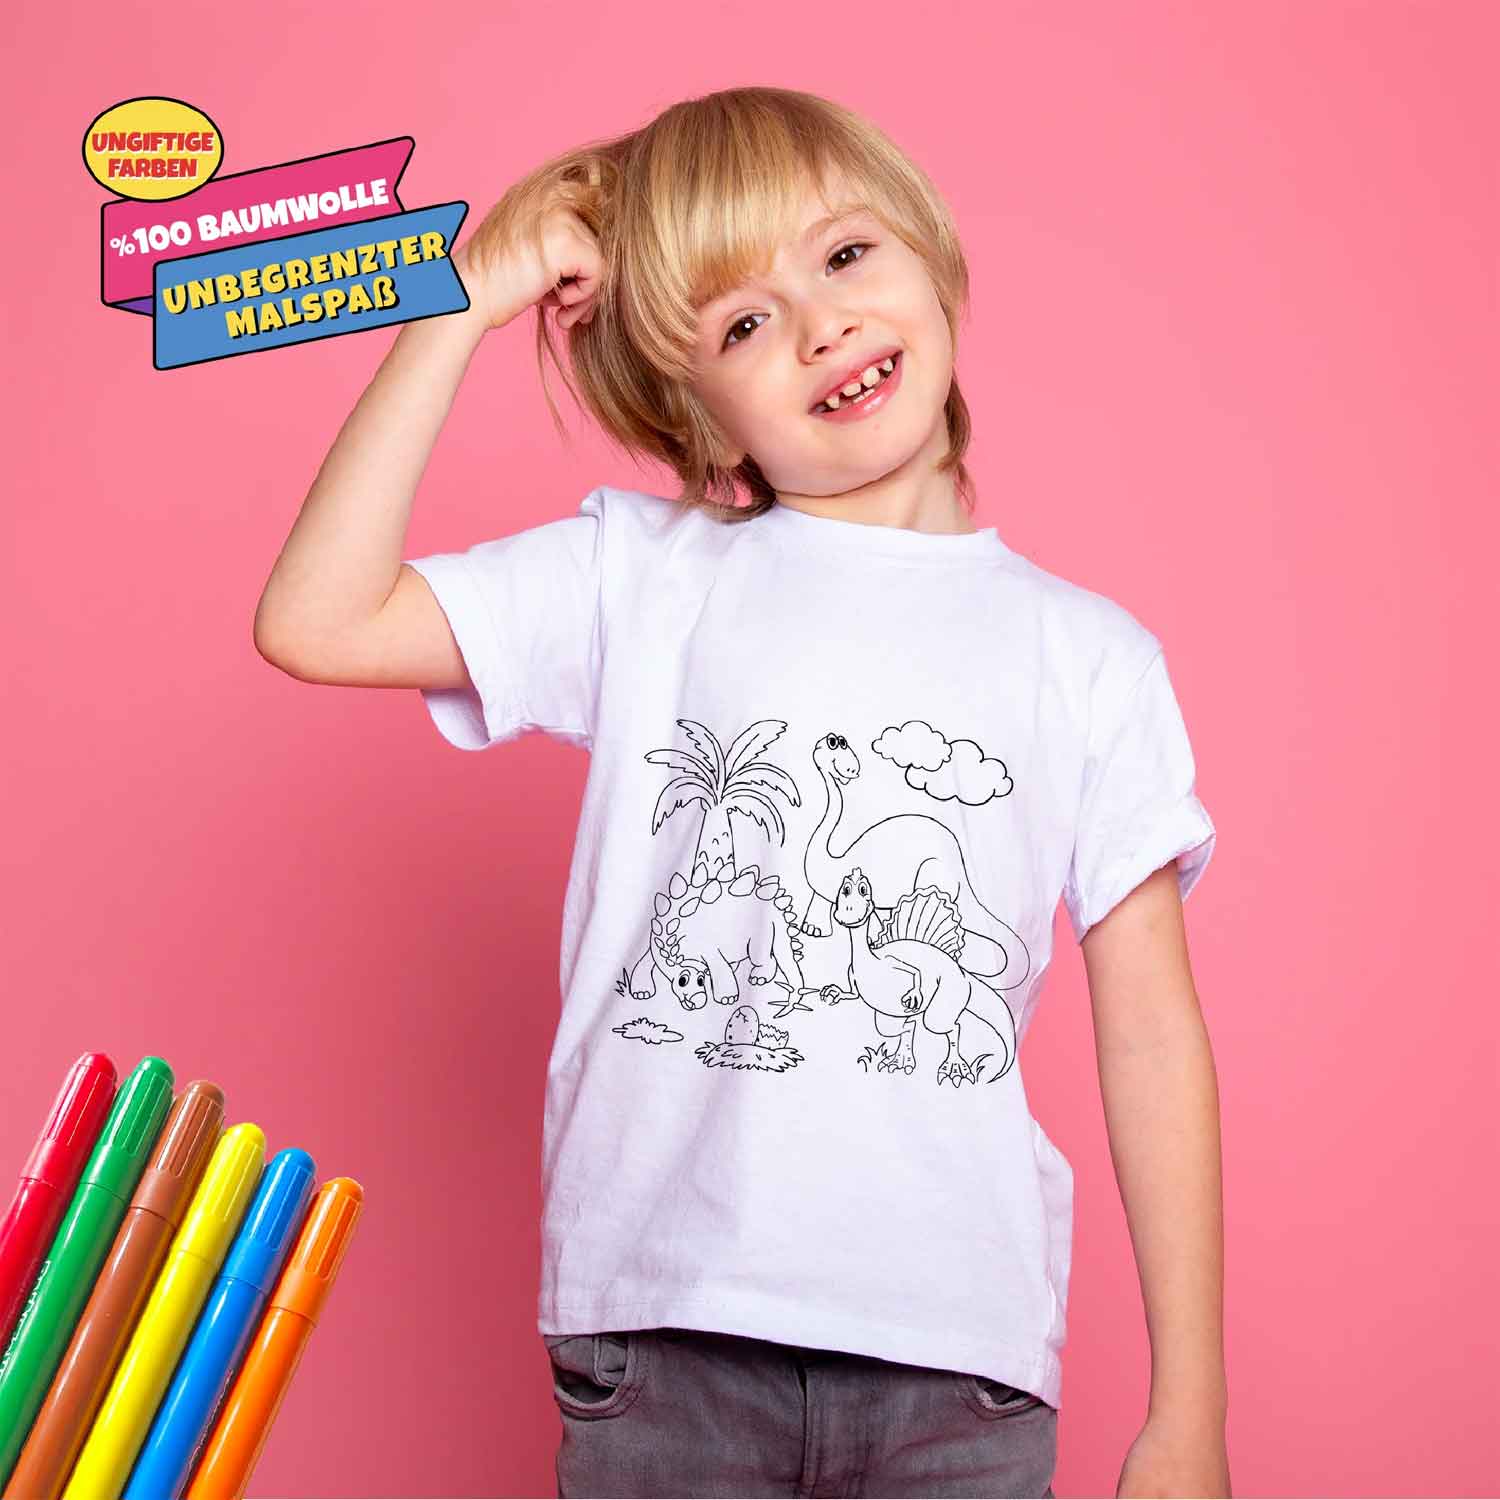 Kinder T-Shirt Set zum Bemalen "Dinosaurierwelt" inkl. 6 Filzstifte